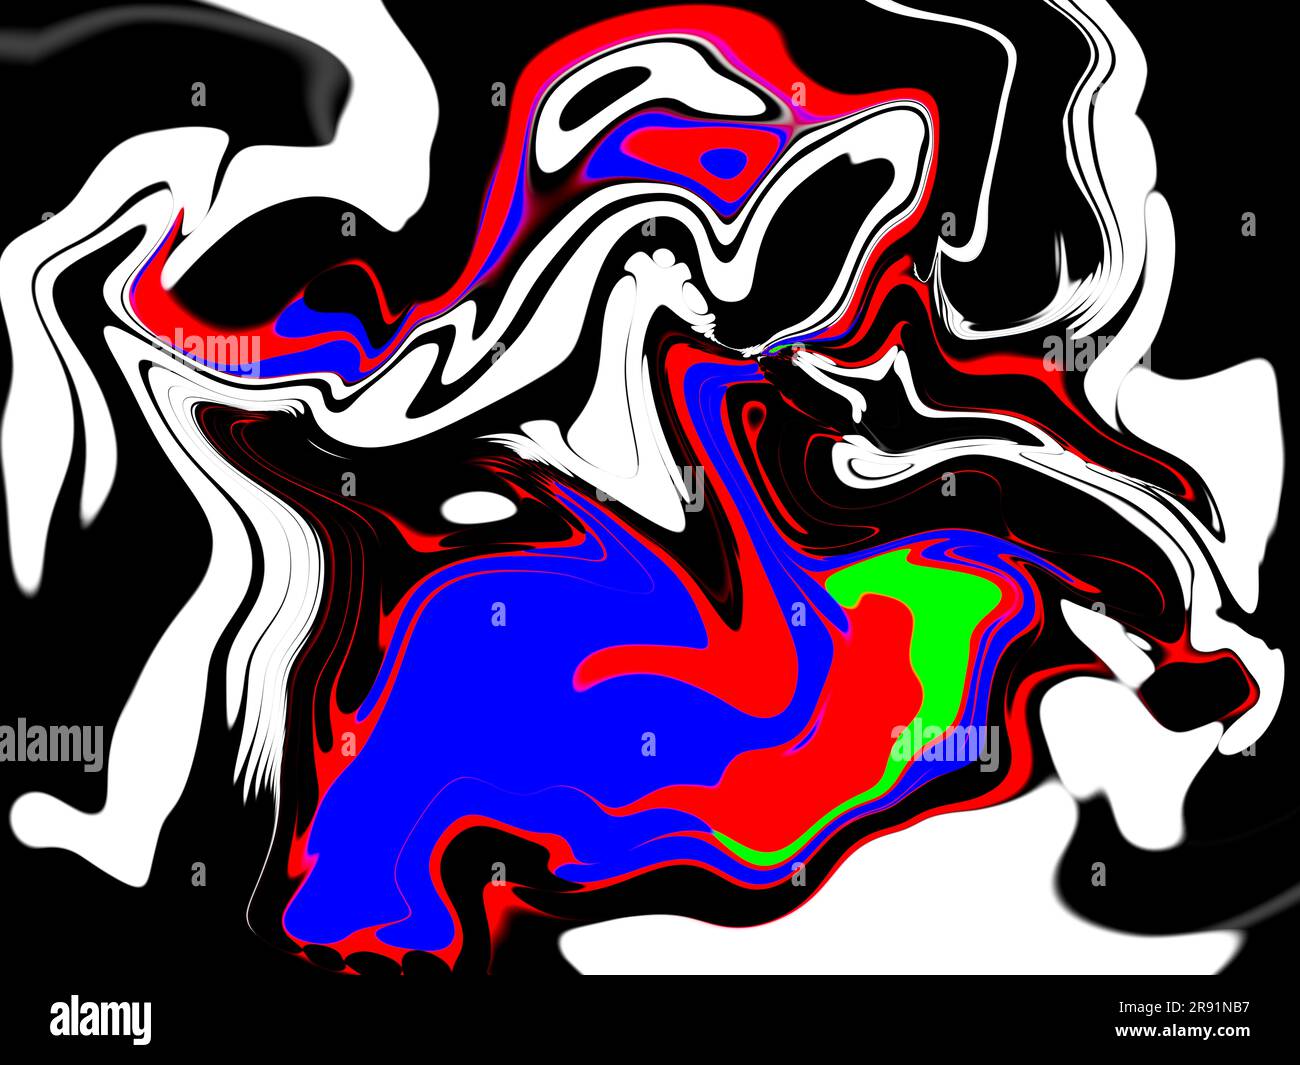 Un astratto creato dipingendo cerchi solidi dei colori primari di rosso, blu, verde e bianco, con uno sfondo nero e poi liquidandoli Foto Stock